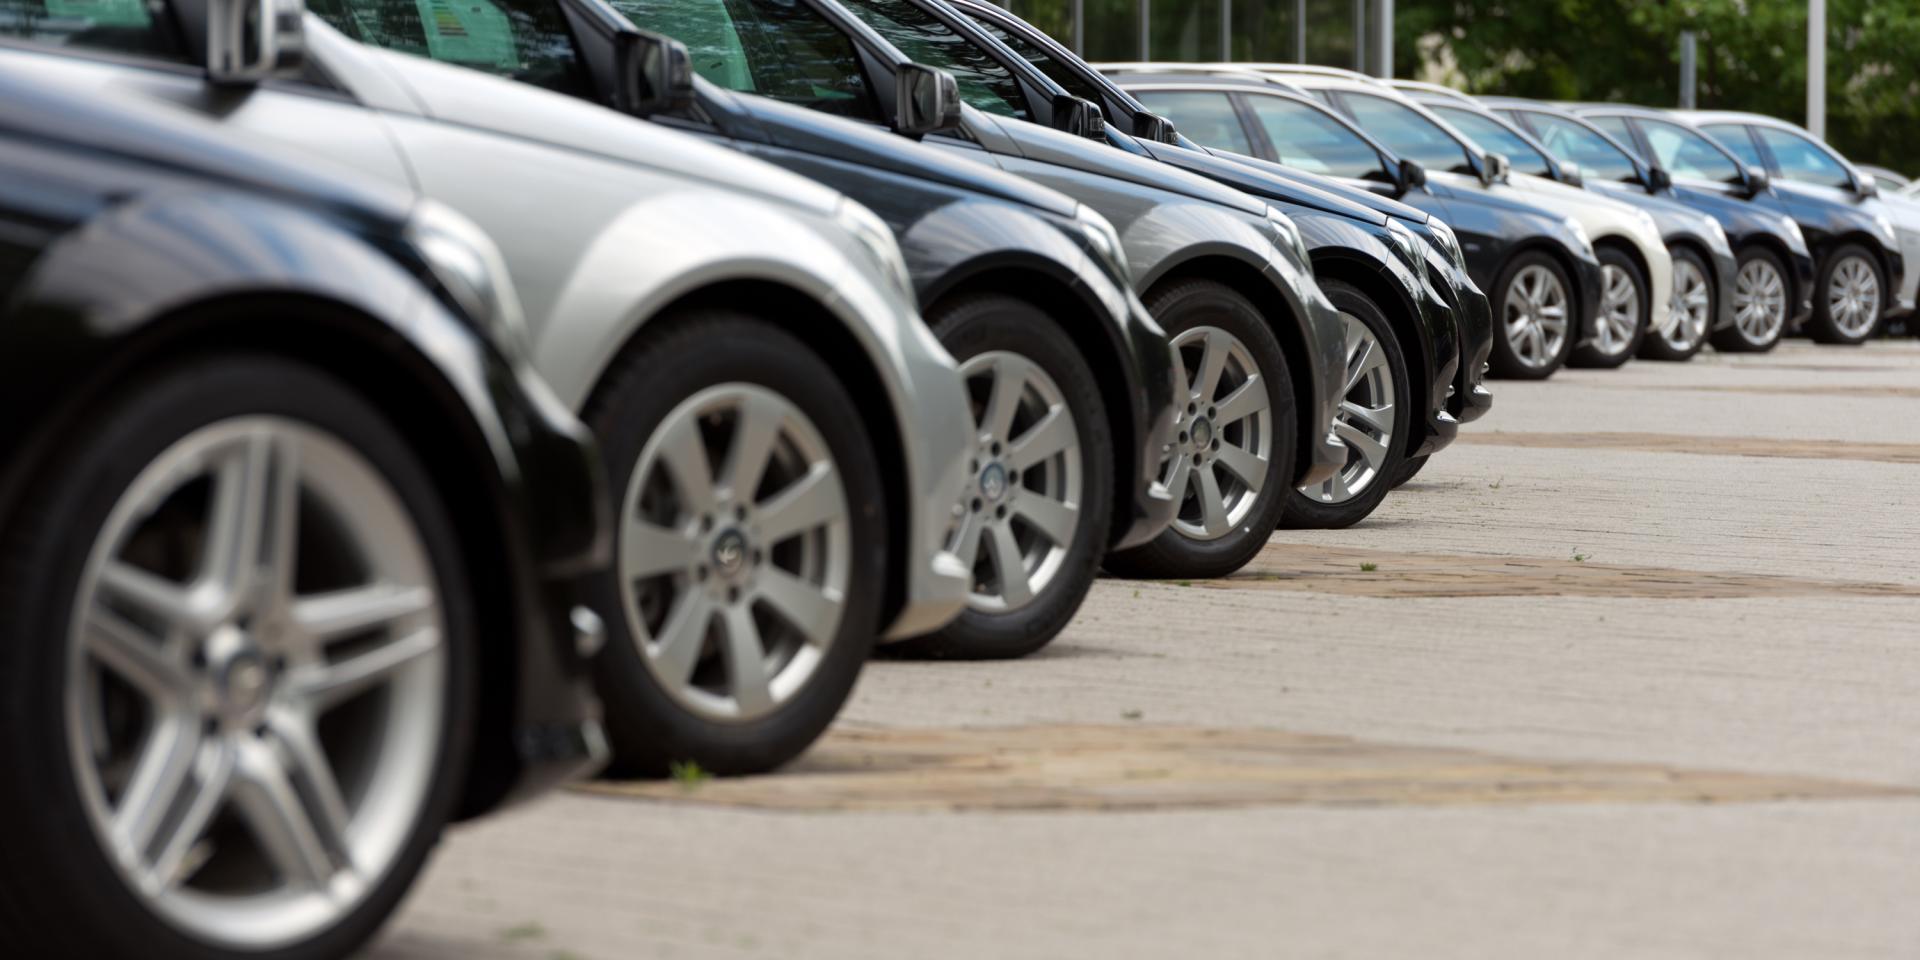 Marché automobile: les ventes baissent de près de 16% en juin